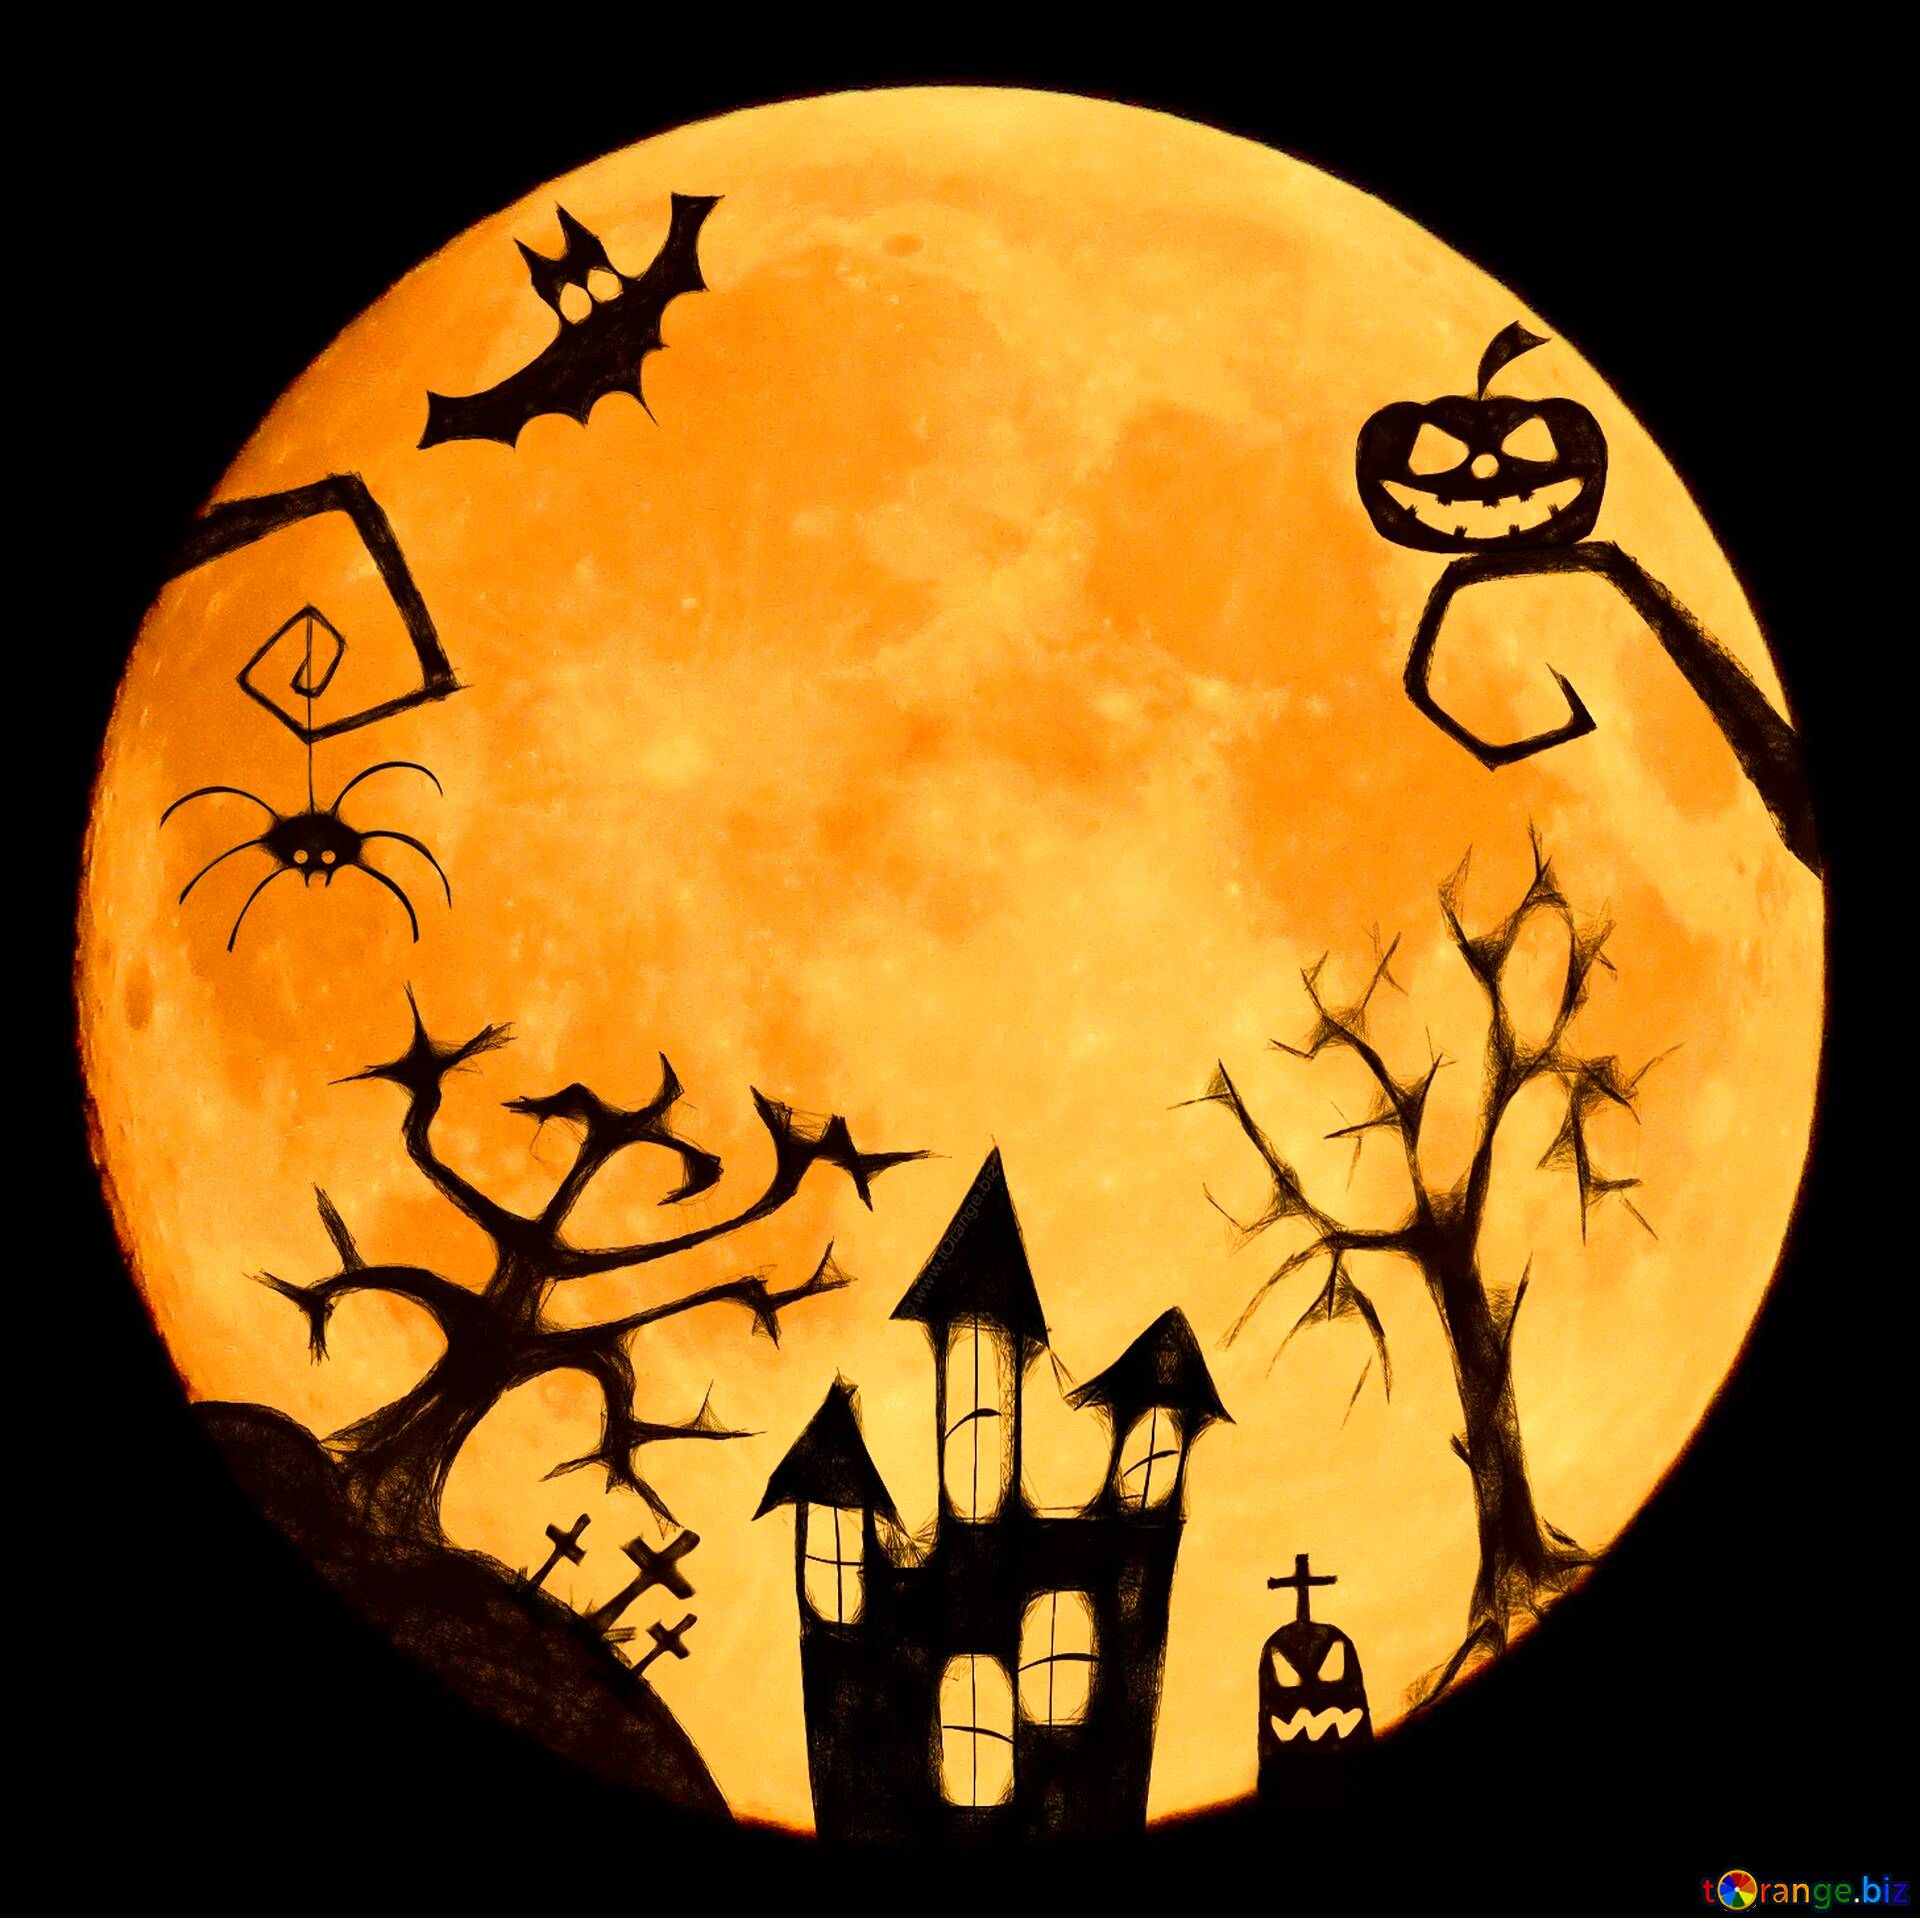 Ããªã¼ç»åããã¦ã³ã­ã¼ã Halloween Moon Clipart Å¸°å±ã¨ã©ã¤ã»ã³ã¹ Ç¡æãã©ããã³ã¯torange Biz Å¹æ 76782